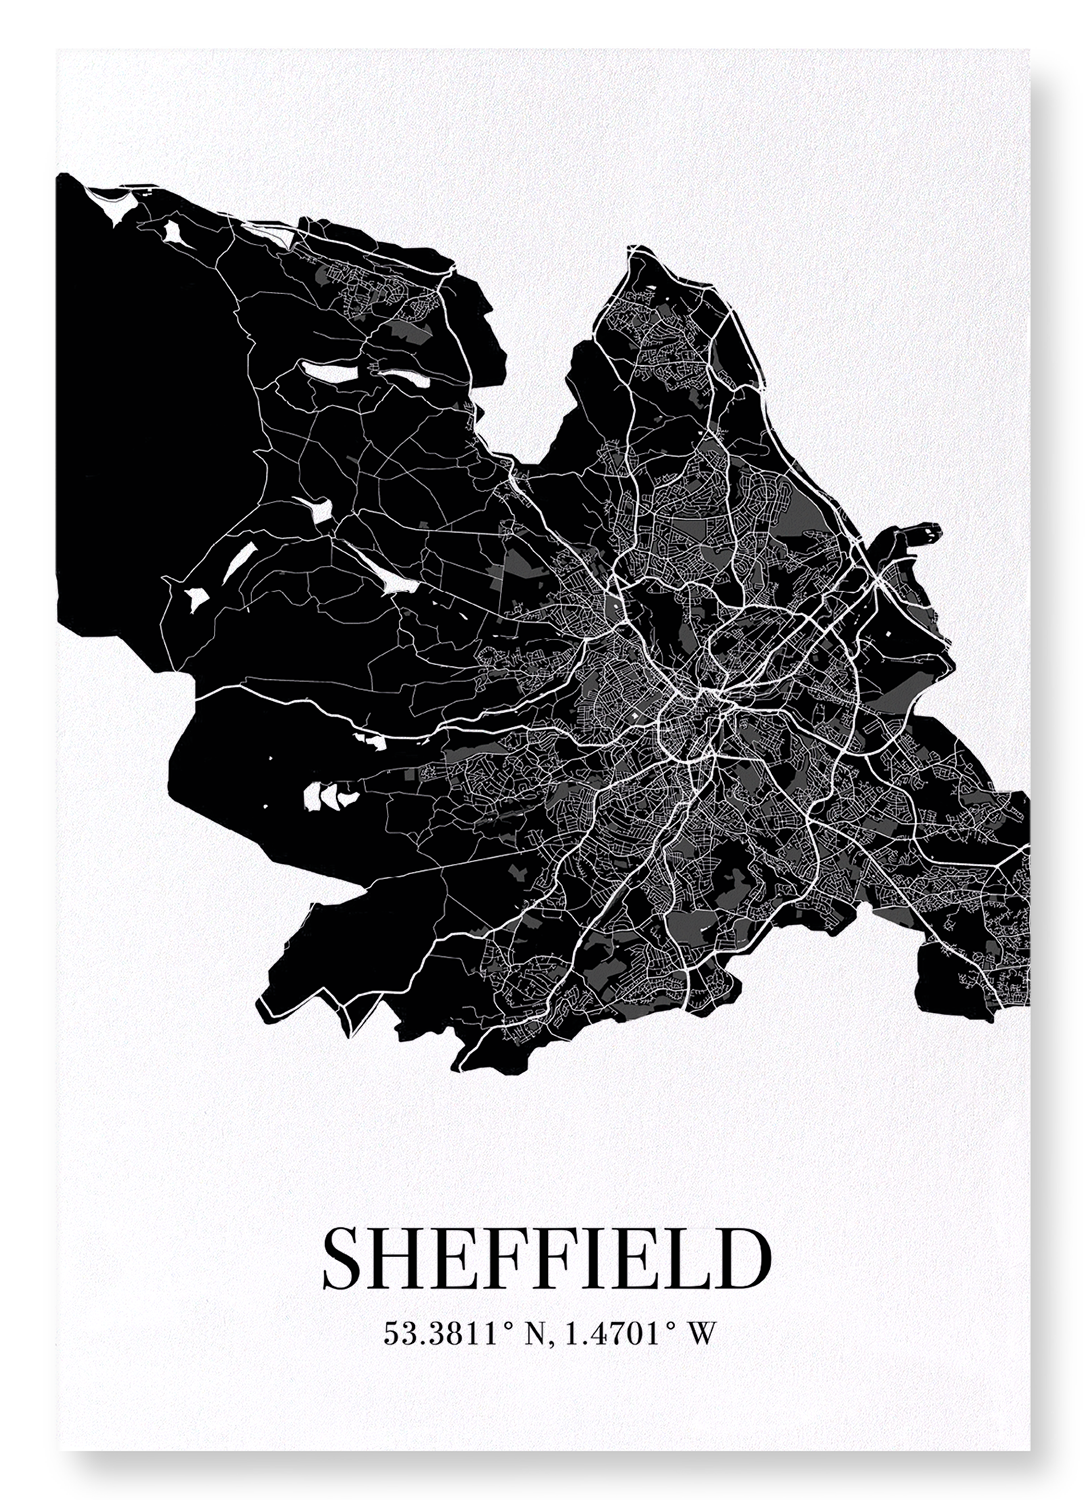 SHEFFIELD CUTOUT: Map Cutout Art Print